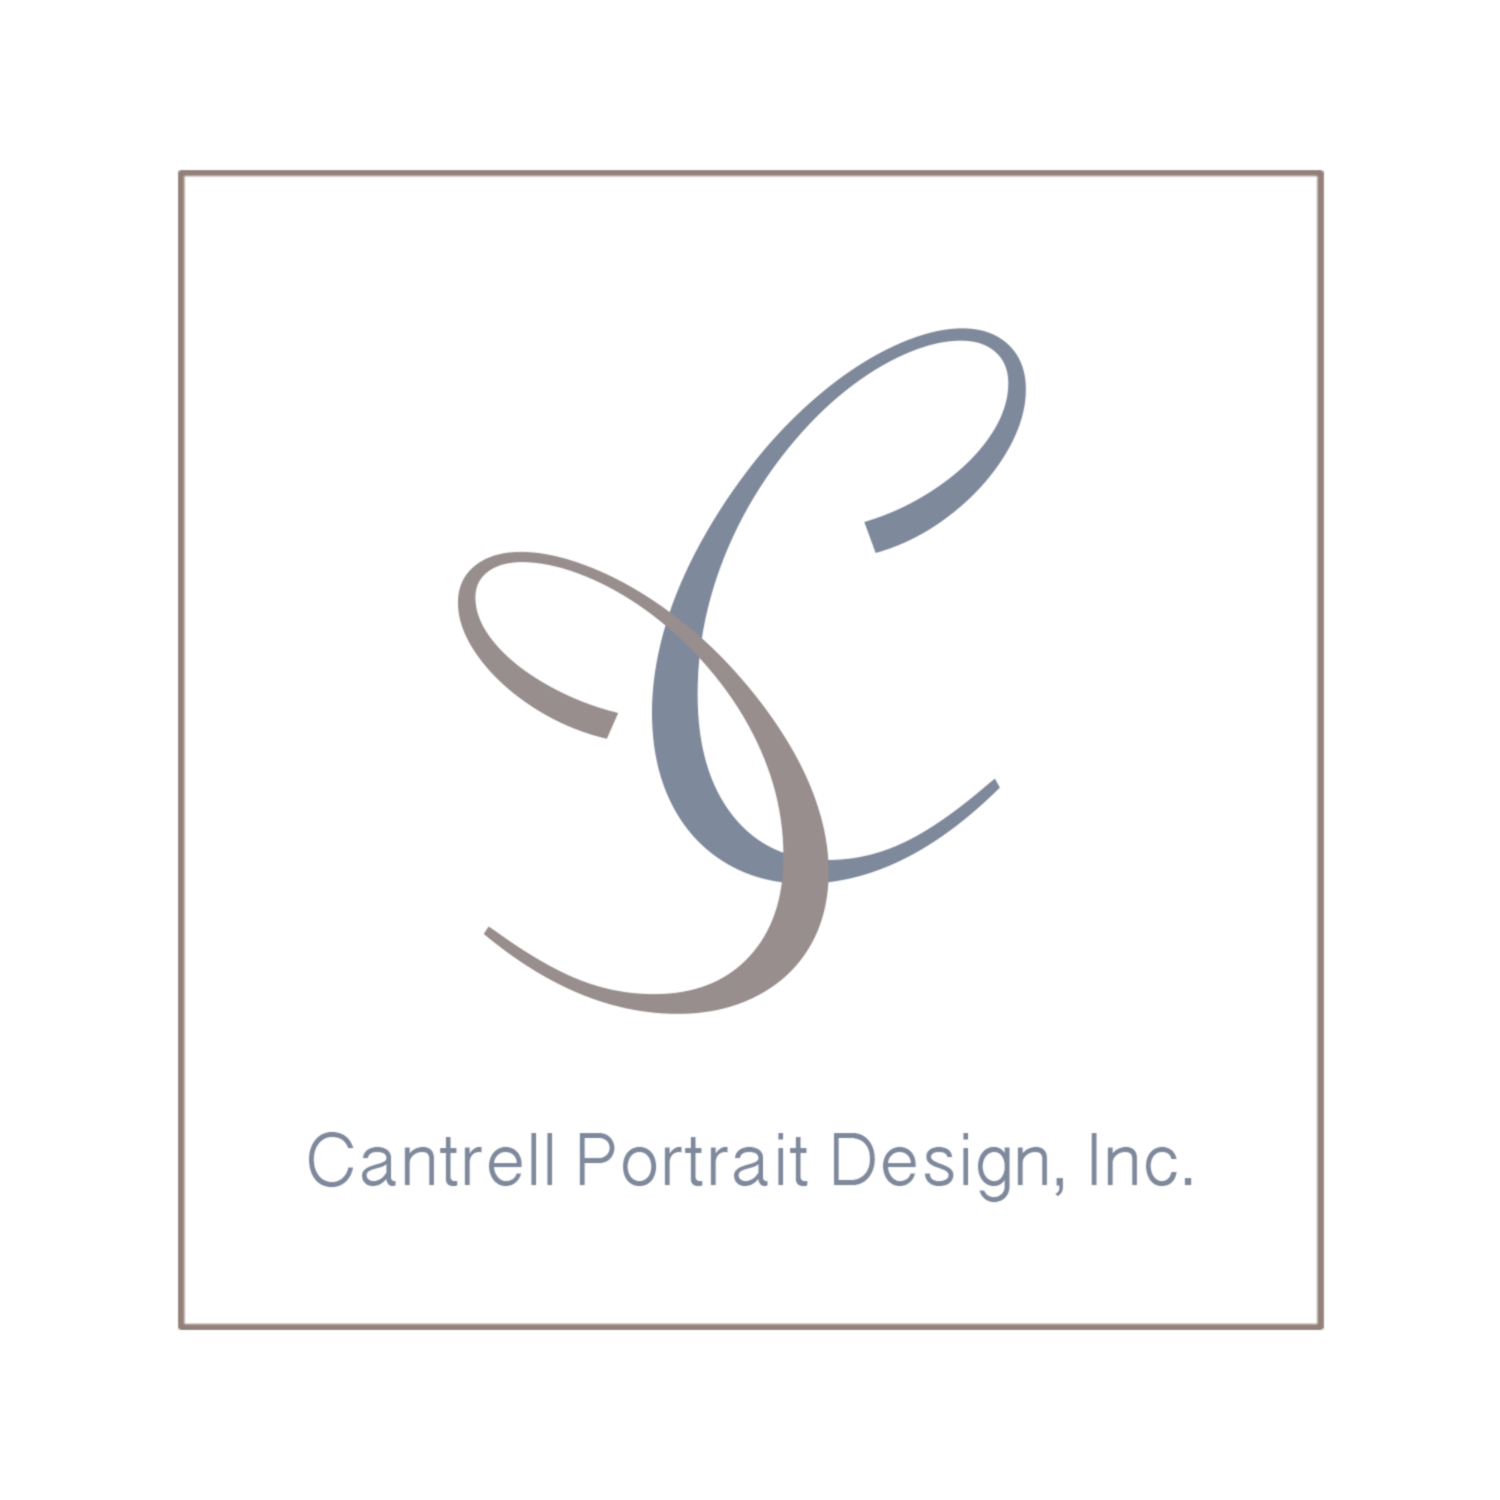 Cantrell Portrait Design, Inc.